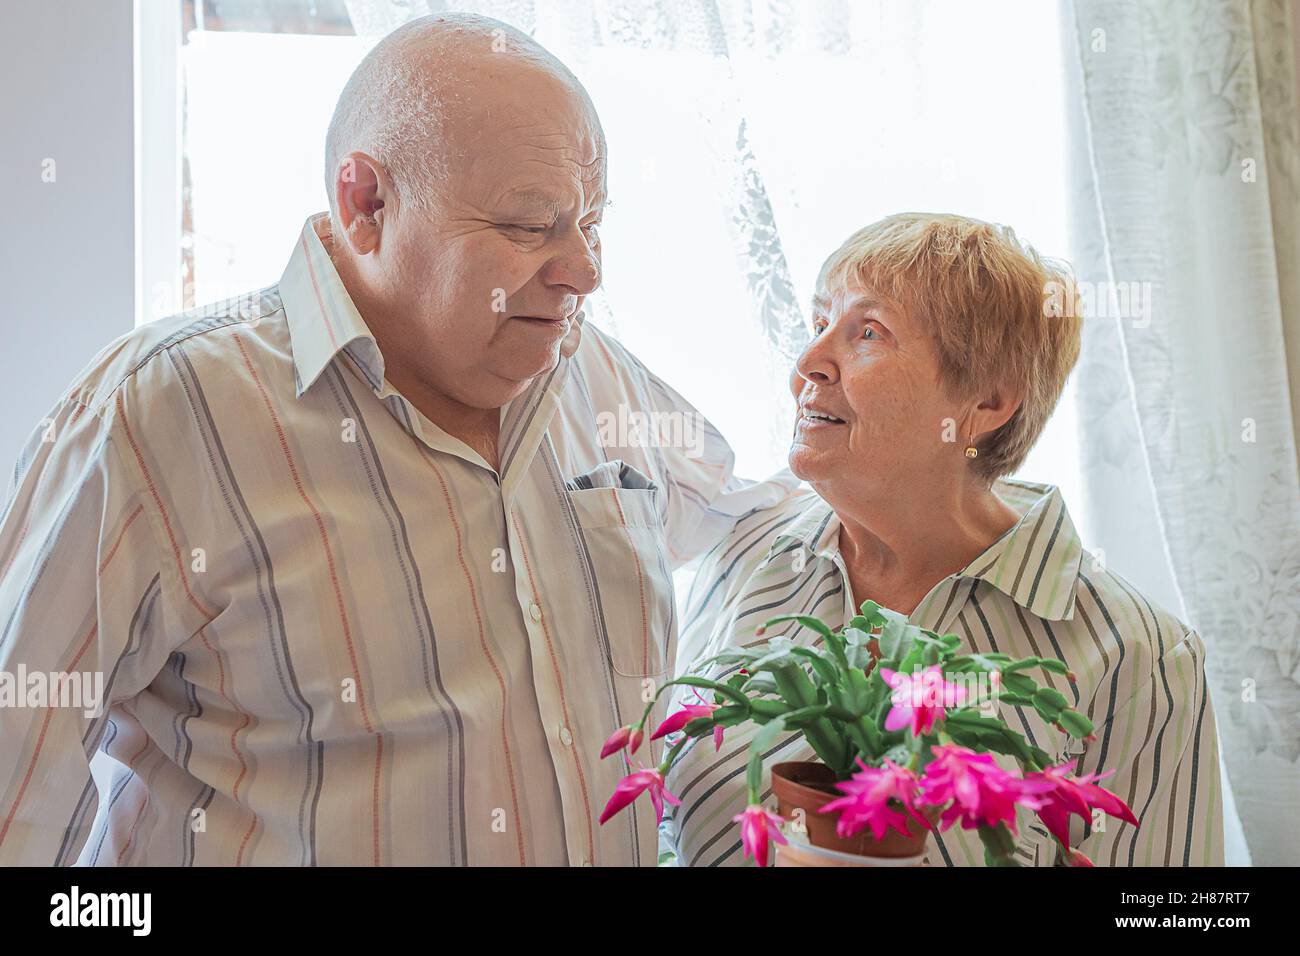 Ältere weißhaarige kaukasische Mann großen Körperbau und ältere Dame blonde Haare schauen einander verliebt in Zimmer in der Nähe Fenster. Blühende Pflanze Stockfoto